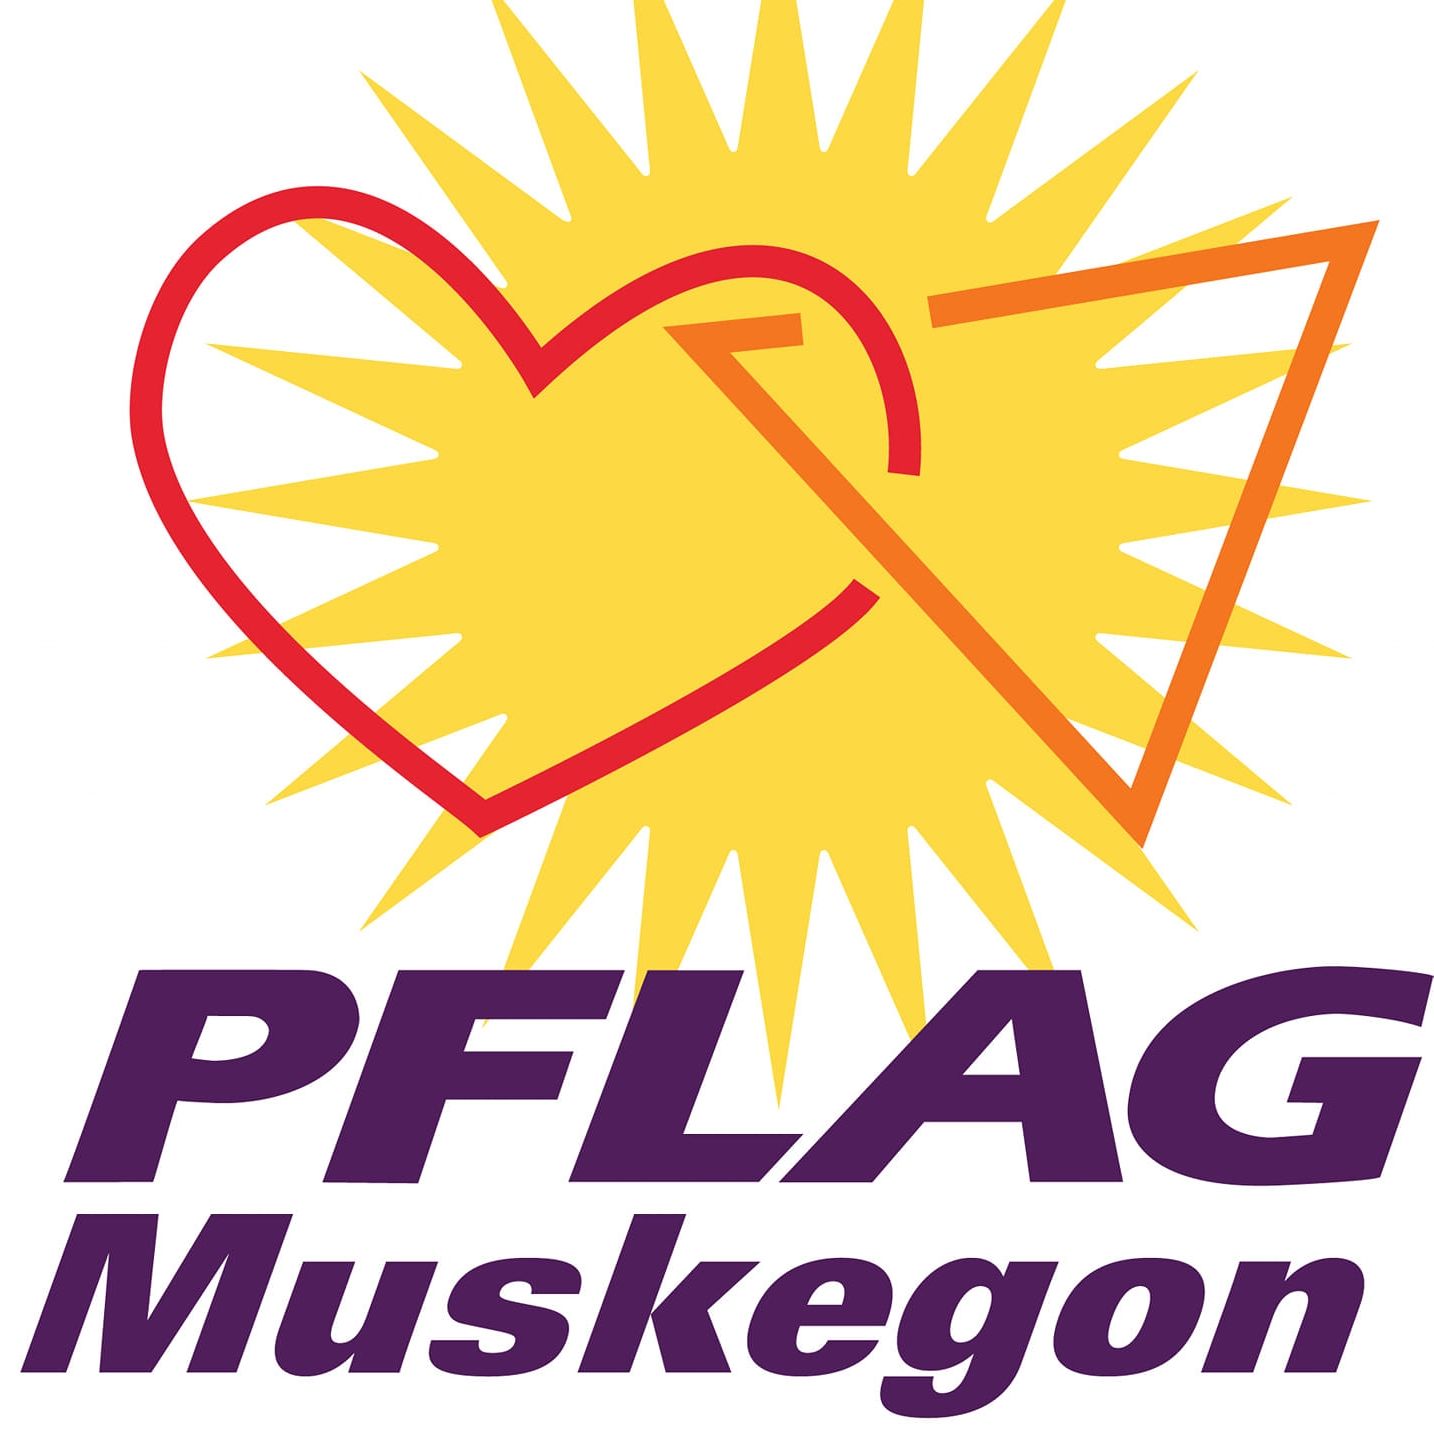 LGBTQ Organization in Detroit Michigan - PFLAG Muskegon